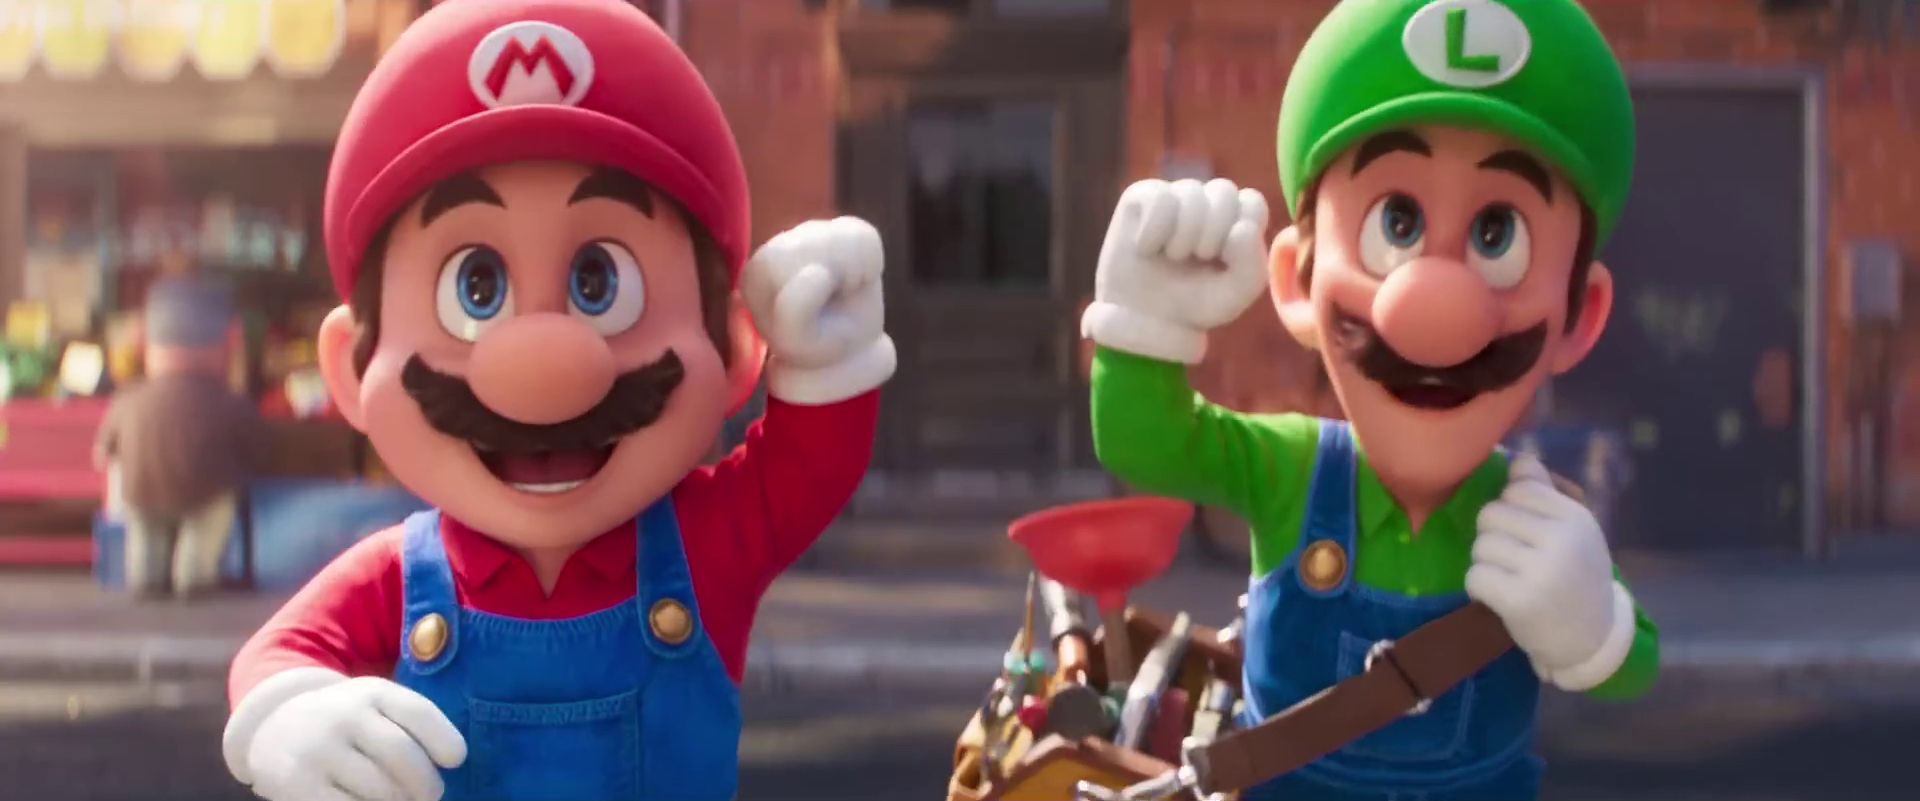 Mario Luigi Super Mario Bros Film